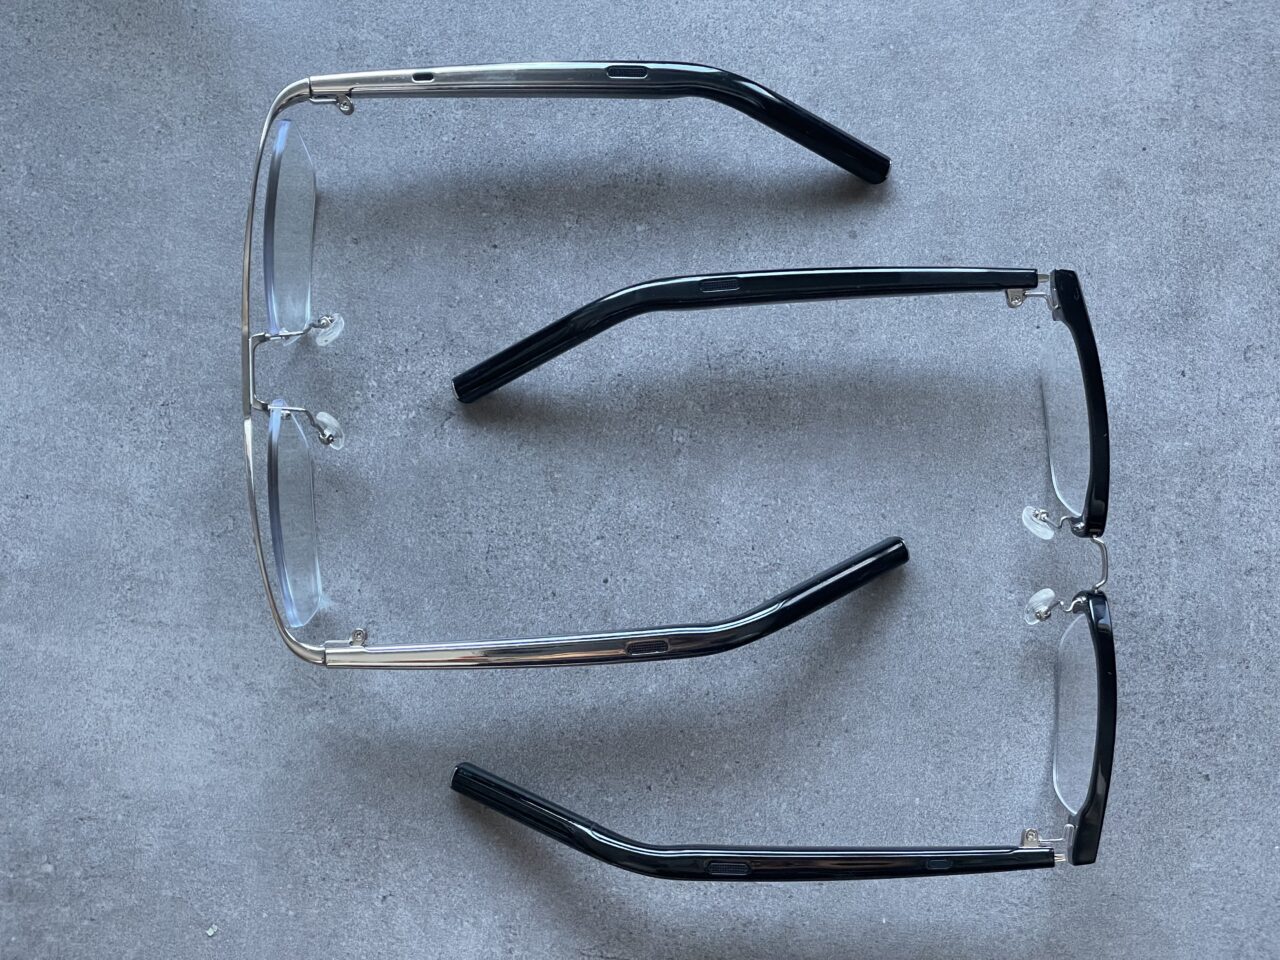 Dwa rozbite okulary z przezroczystymi szkłami na szarym tle, ich oprawki są połamane i rozłożone na dwie części.